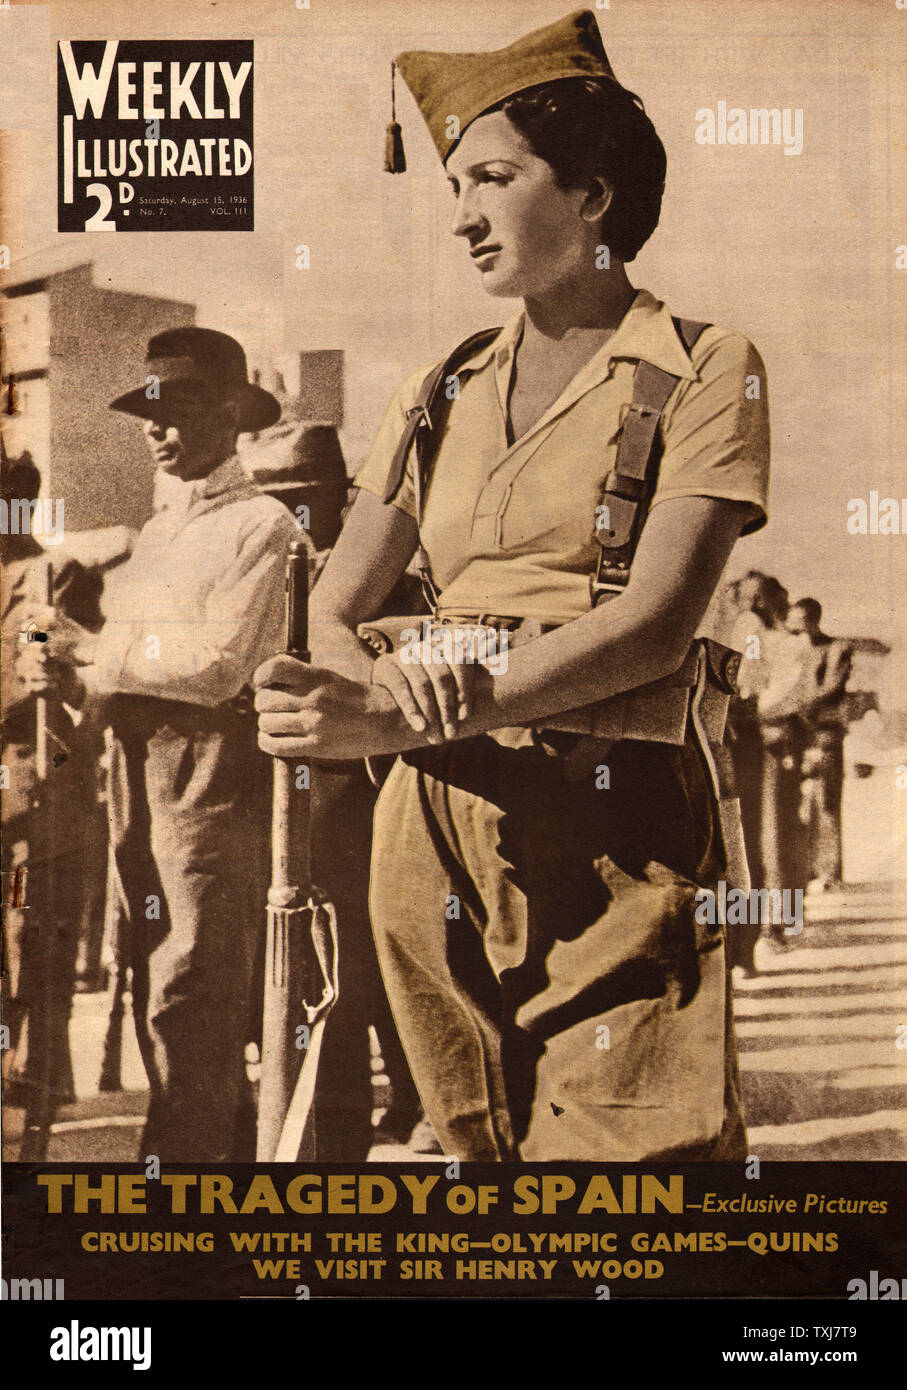 1936 illustré hebdomadaire de la guerre civile espagnole Banque D'Images